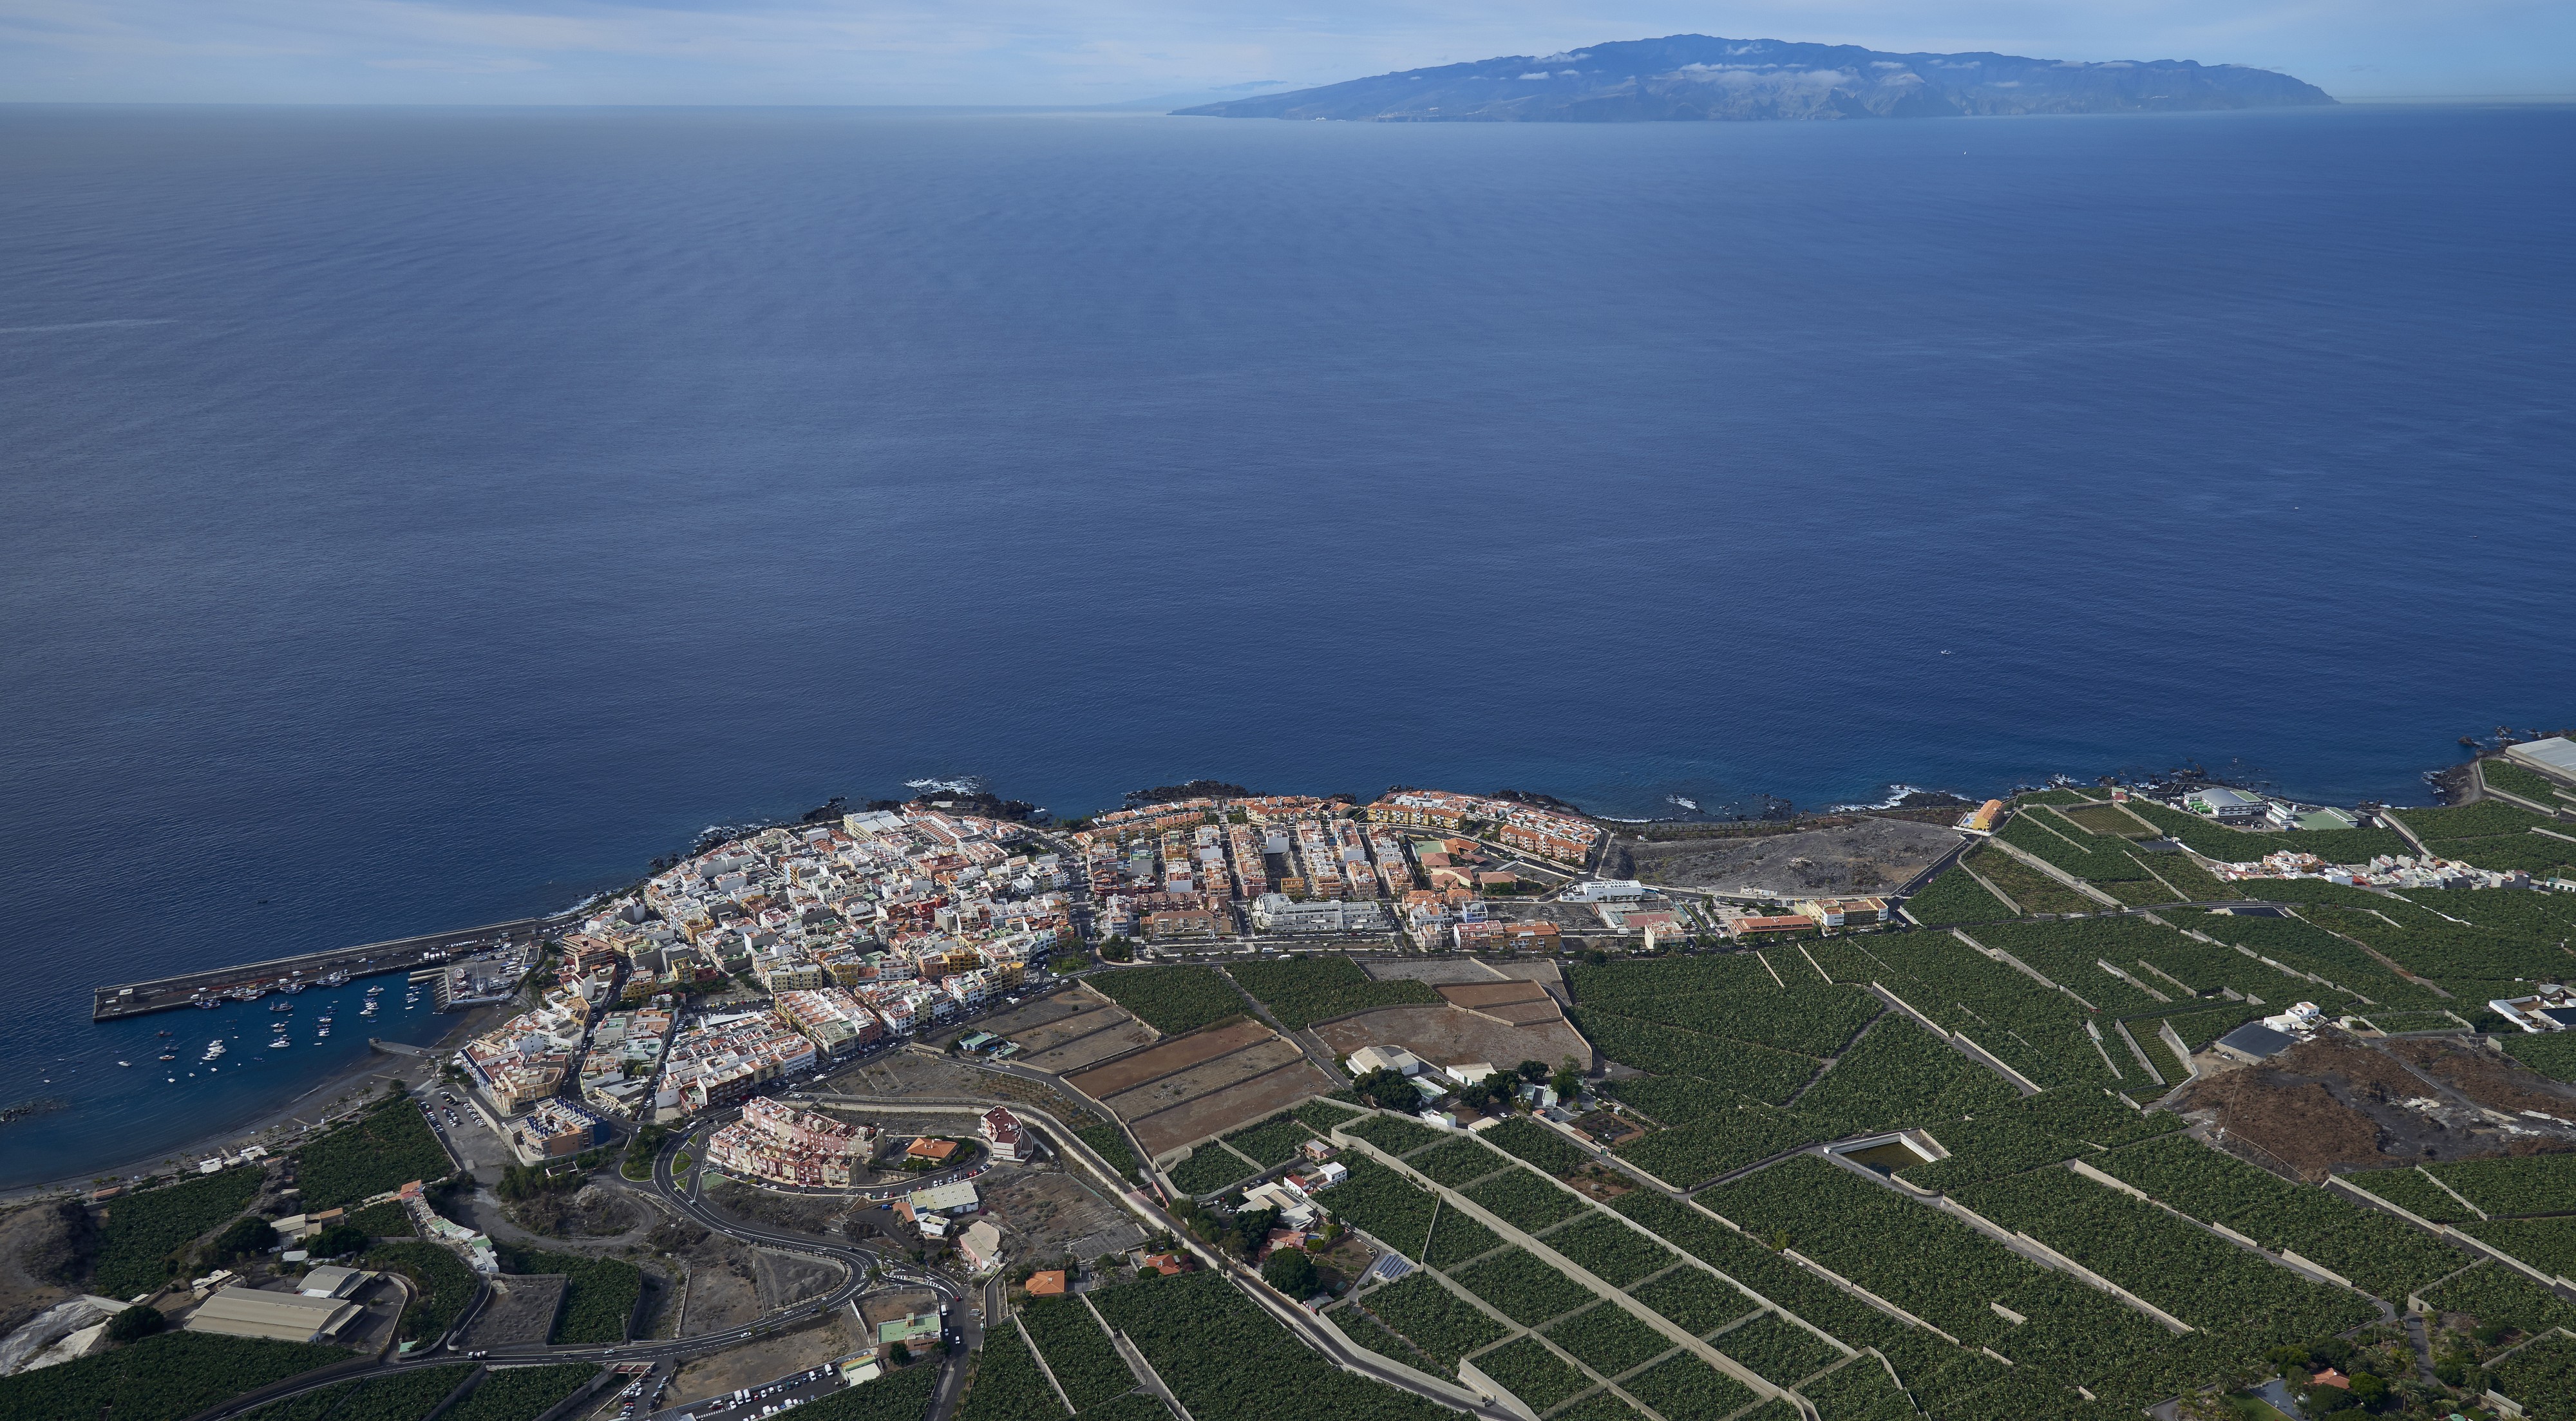 A0200 Tenerife, Playa San Juan aerial view